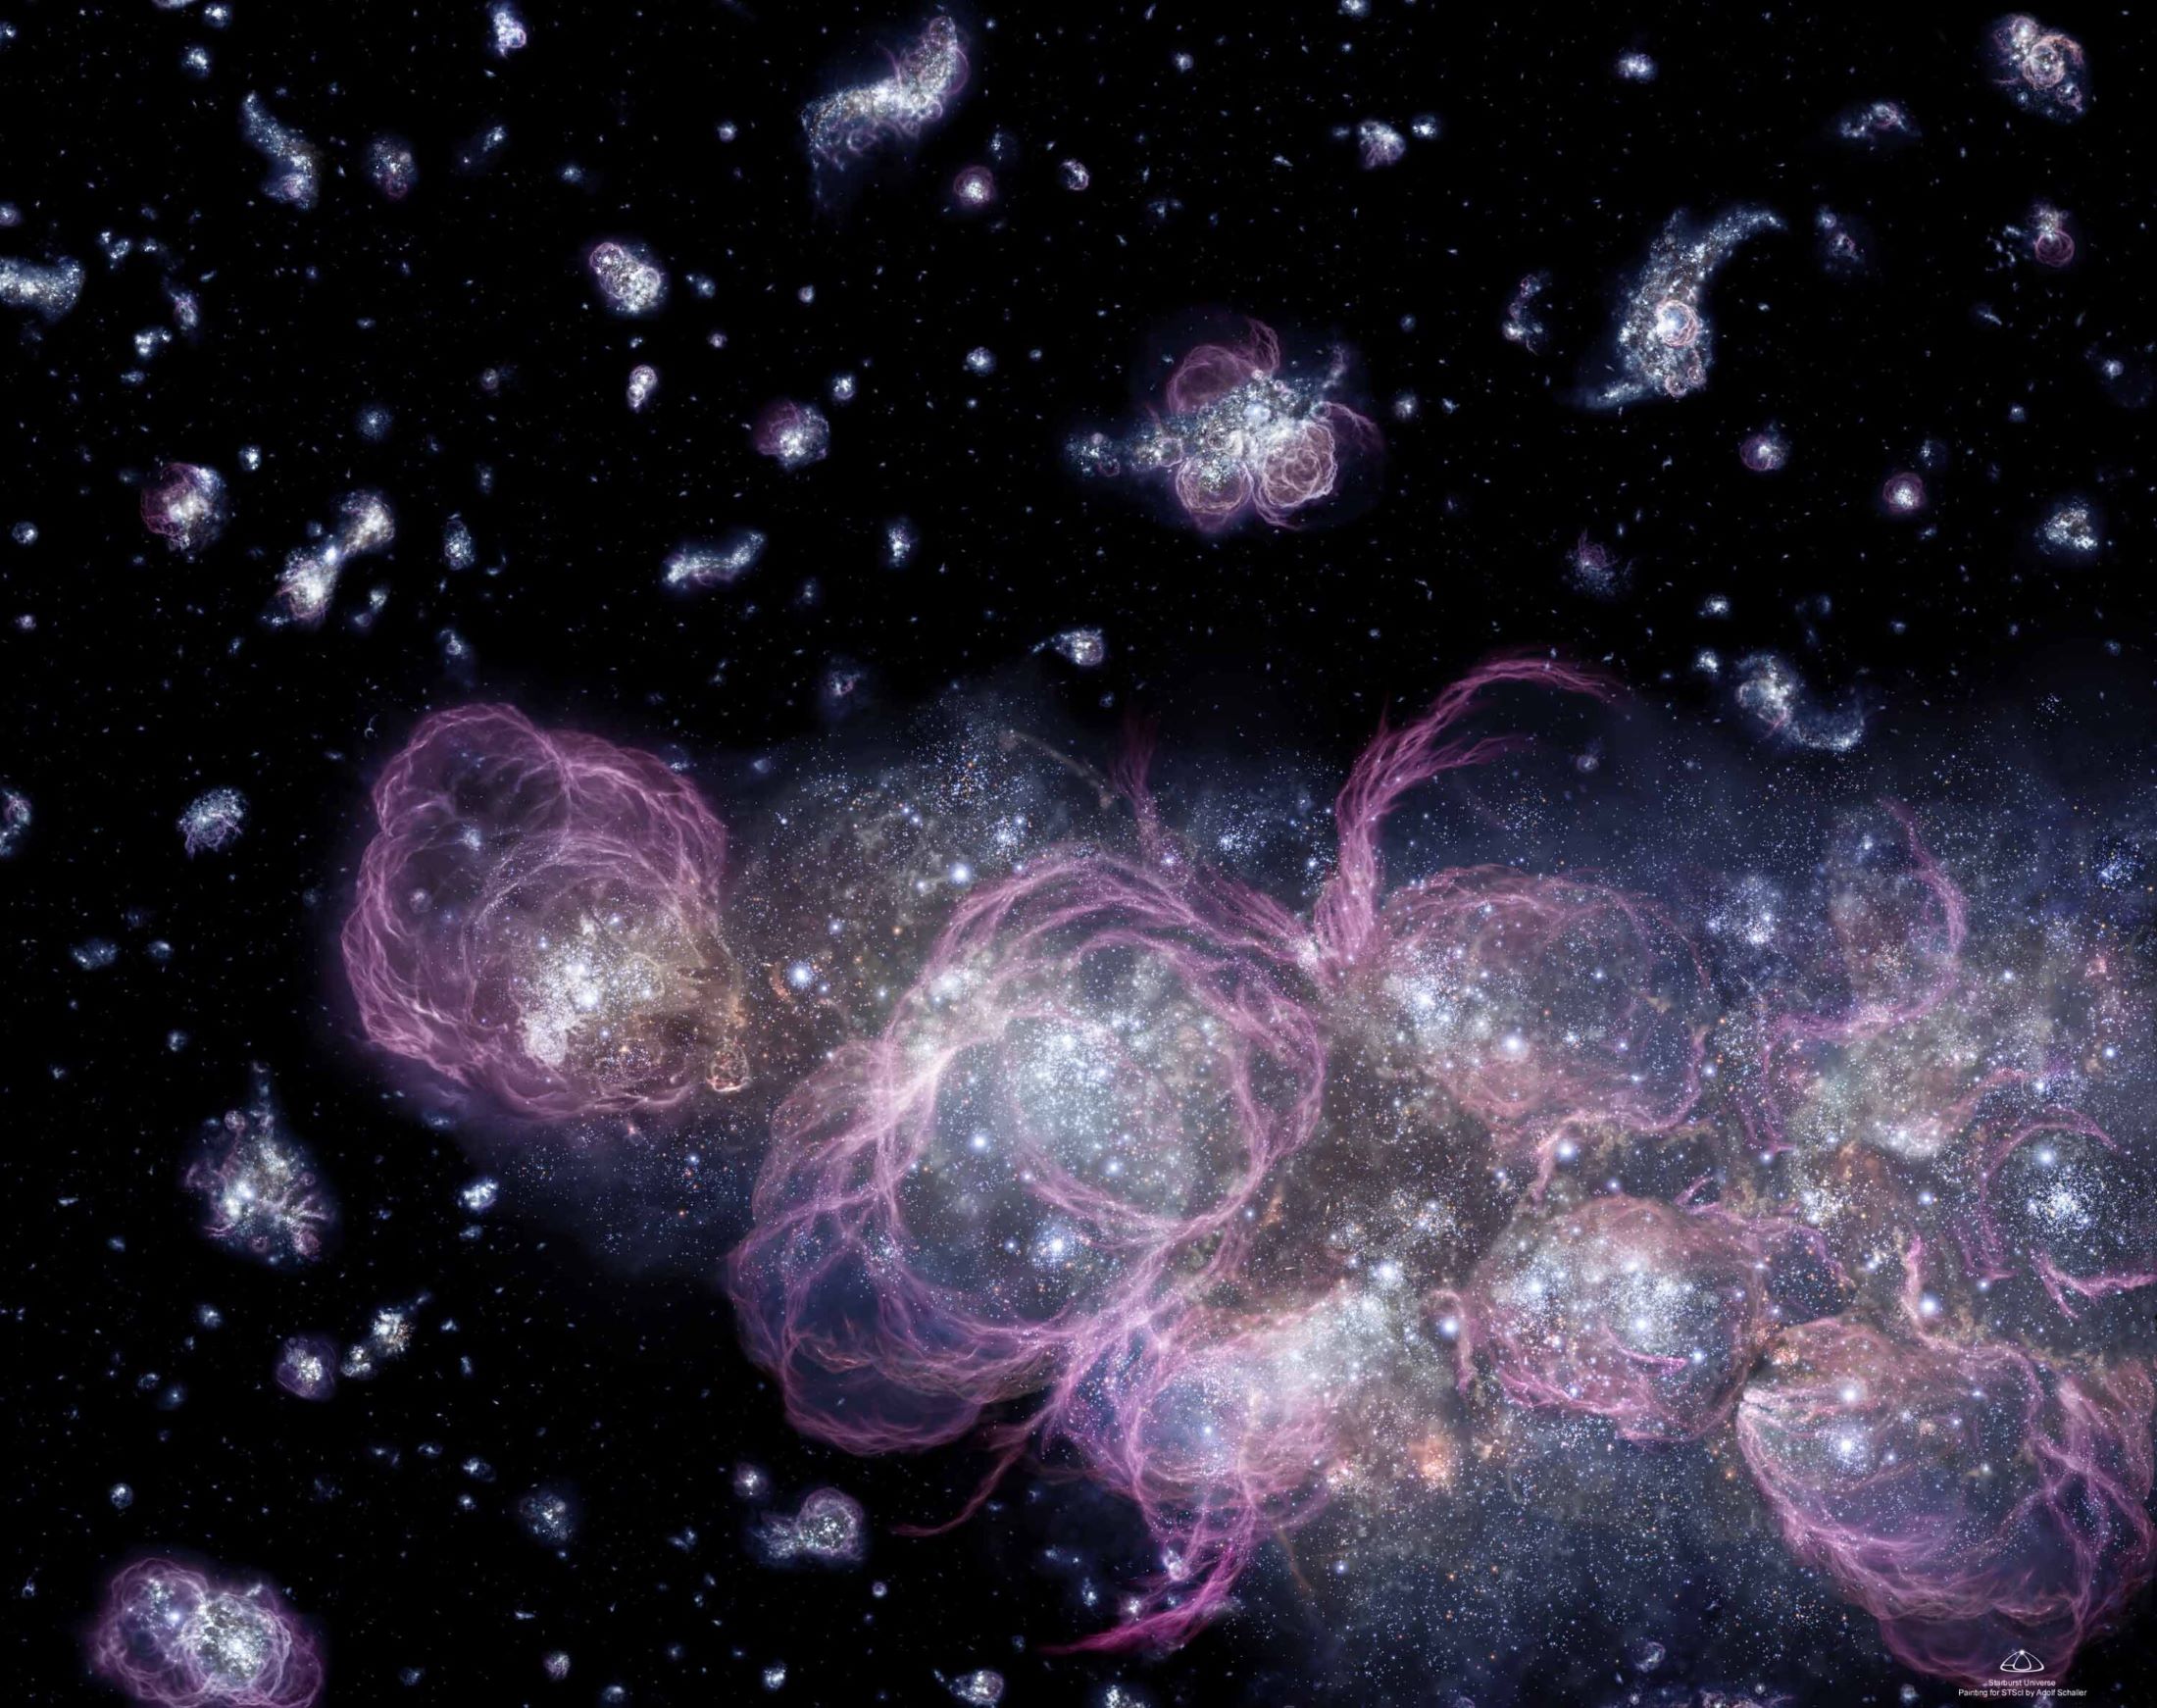 Ova umjetnička vizija prikazuje kako je svemir mogao izgledati kada je bio star manje od milijardu godina, što je otprilike 7 posto njegove sadašnje dobi. U to vrijeme, stvaranje zvijezda ubrzano je trošilo primordijalni vodik, stvarajući nebrojene zvijezde nevjerojatnom brzinom. NASA-in teleskop Nancy Grace Roman će zaviriti u rane faze svemira kako bi razumio kako je svemir prešao iz neprozirnog stanja u blještavu zvjezdanu sliku koju danas vidimo. Zasluge: NASA, ESA i A. Schaller (za STScI).